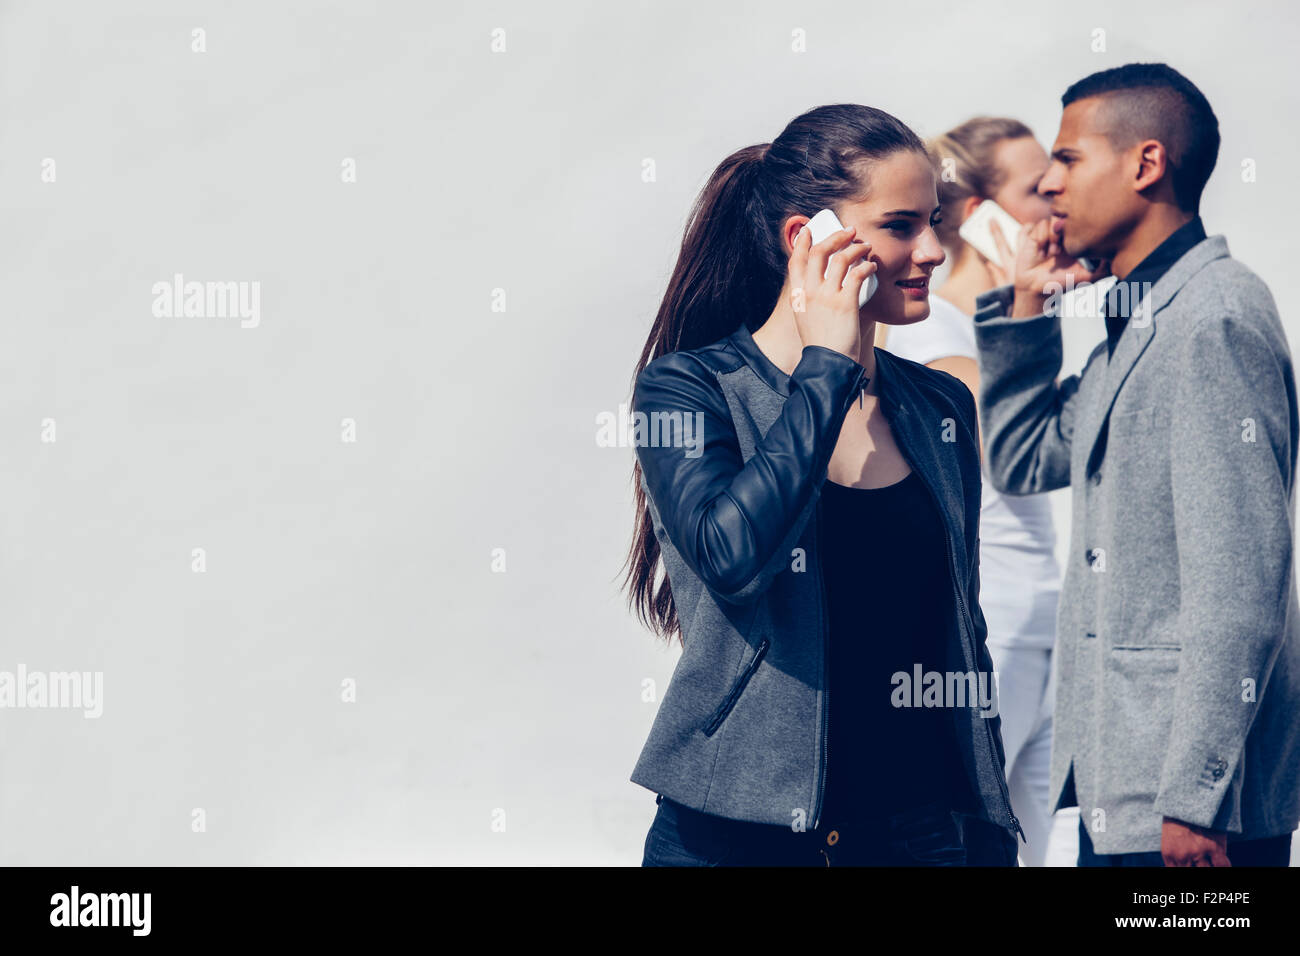 Junge Frau mit Smartphone vor zwei anderen Menschen telefonieren Stockfoto